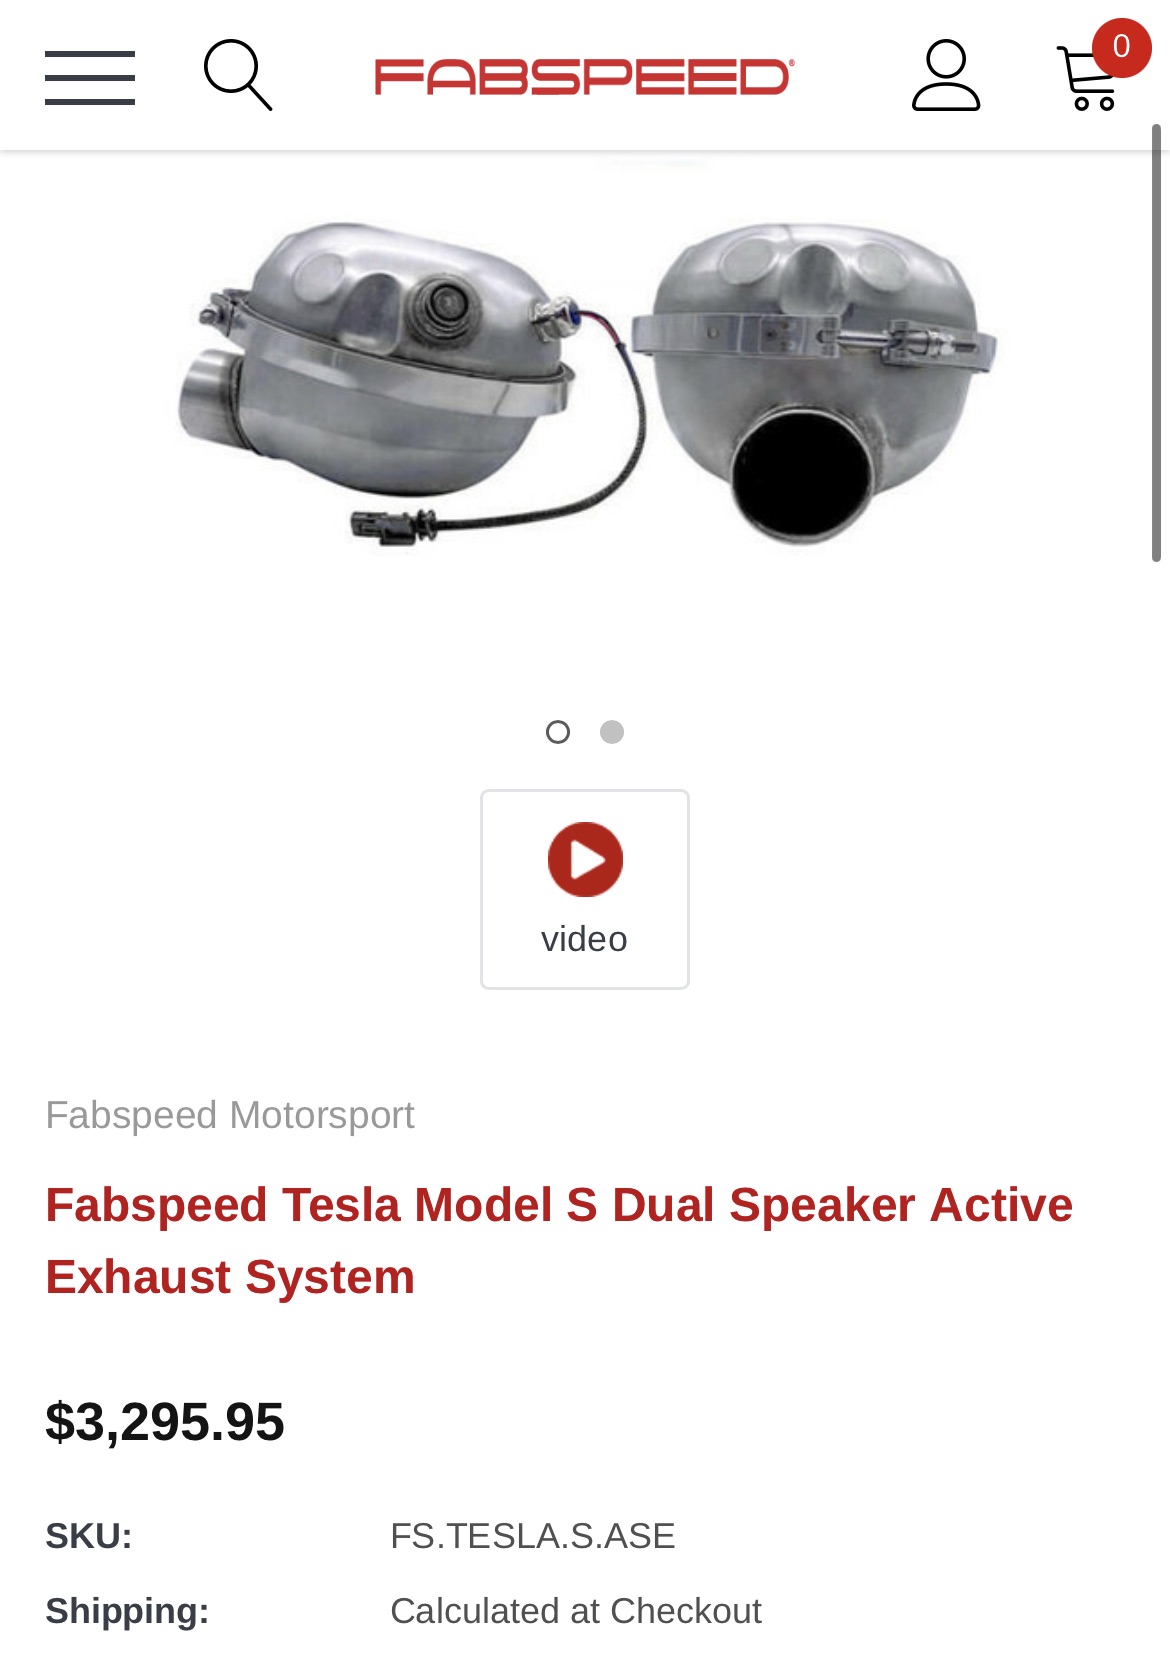 Fabspeed Tesla Model S Dual Speaker Active Exhaust System - Fabspeed Motorsport.jpg